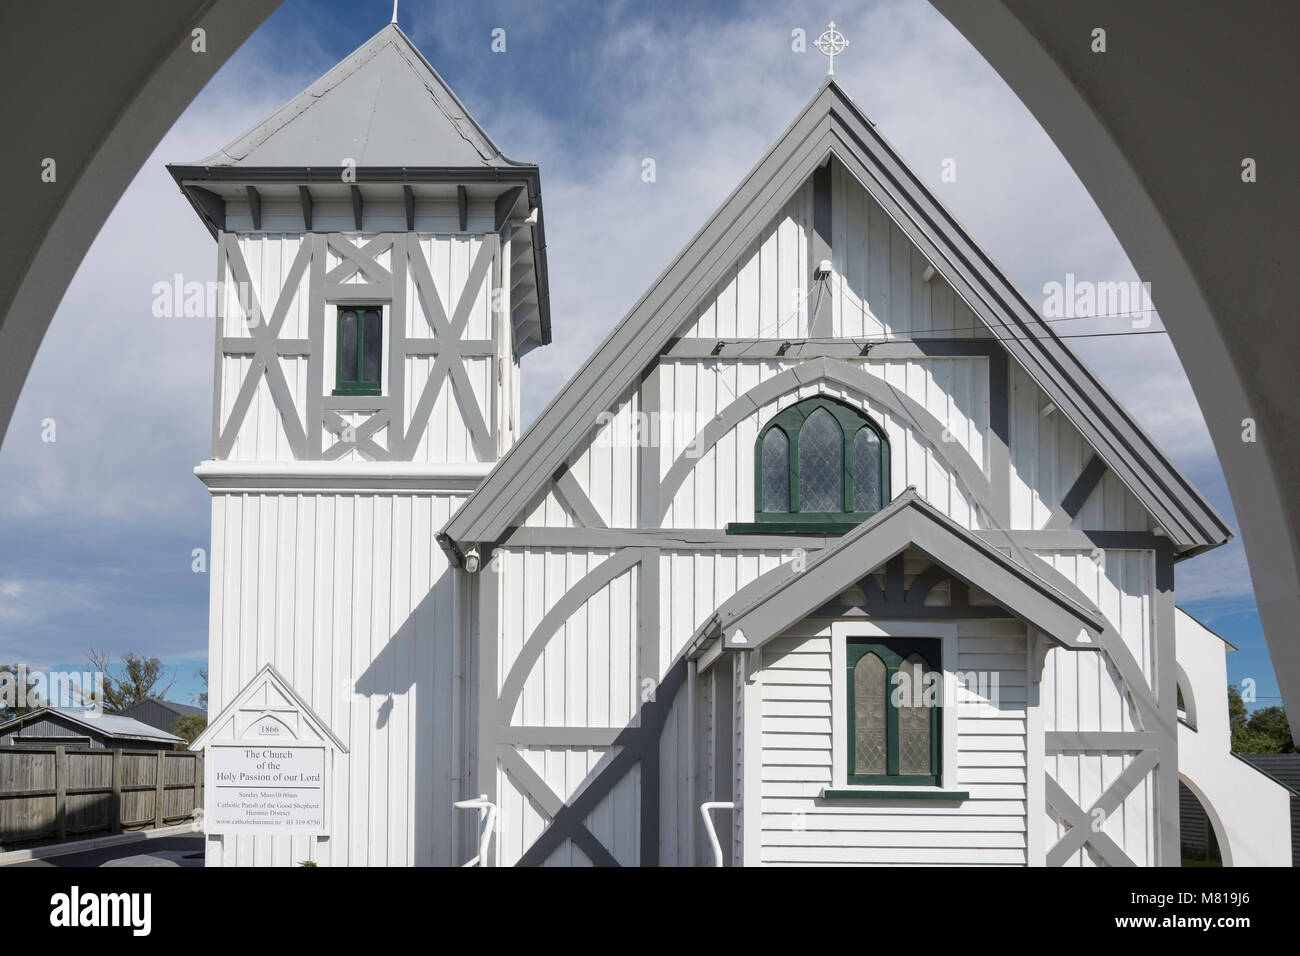 Storica chiesa della Santa Passione di Nostro Signore, carradori Road, Amberley, regione di Canterbury, Nuova Zelanda Foto Stock